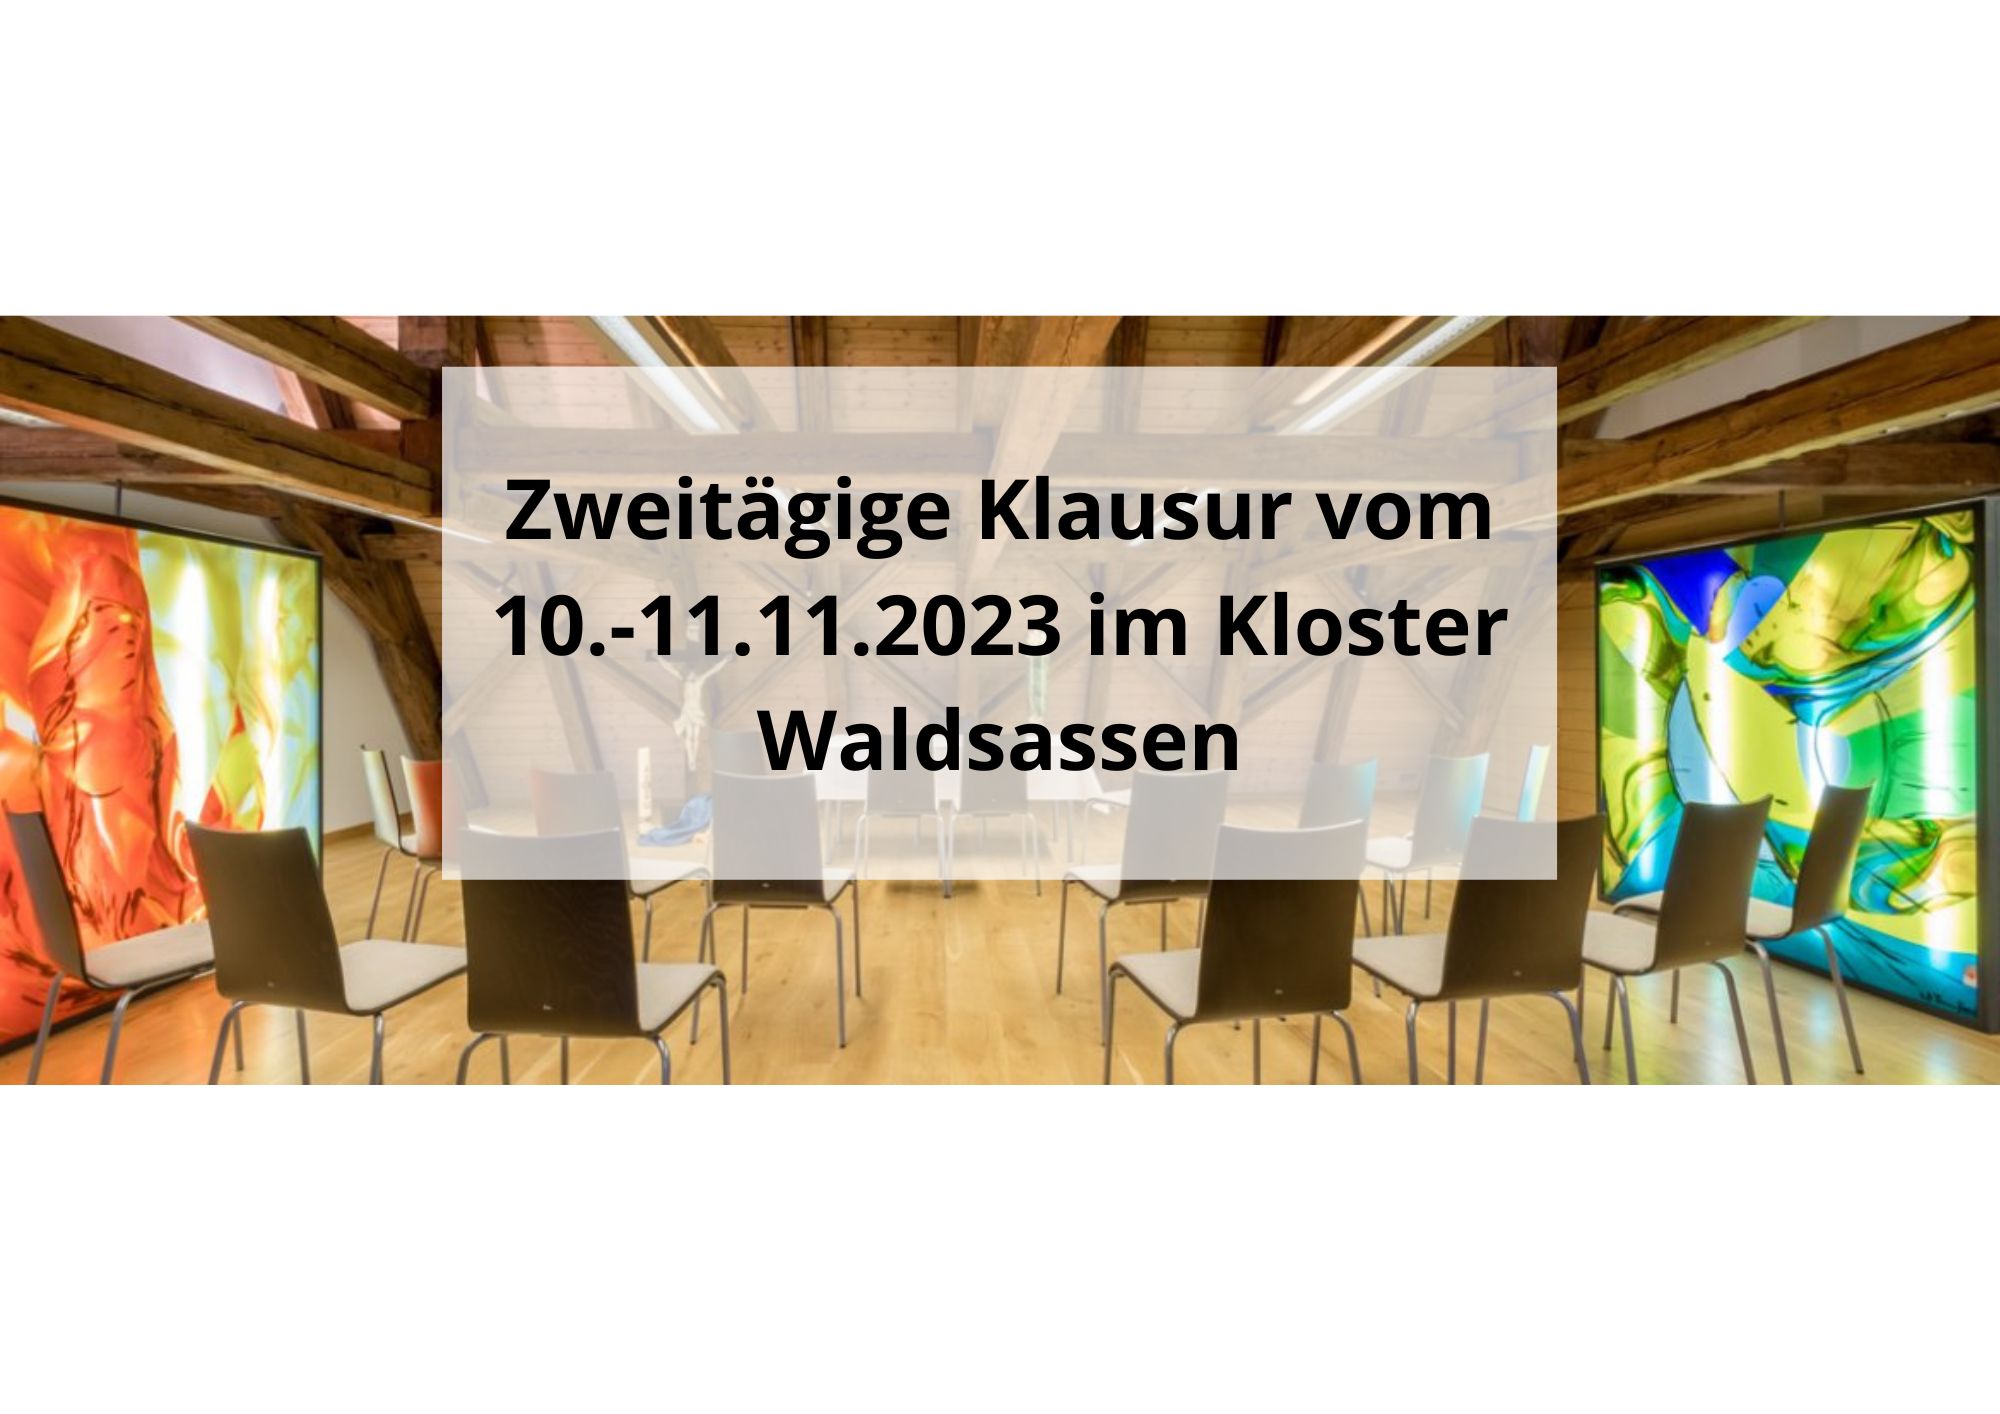 Zweitägige Klausur vom 10.-11.11.2023 im Kloster Waldsassen